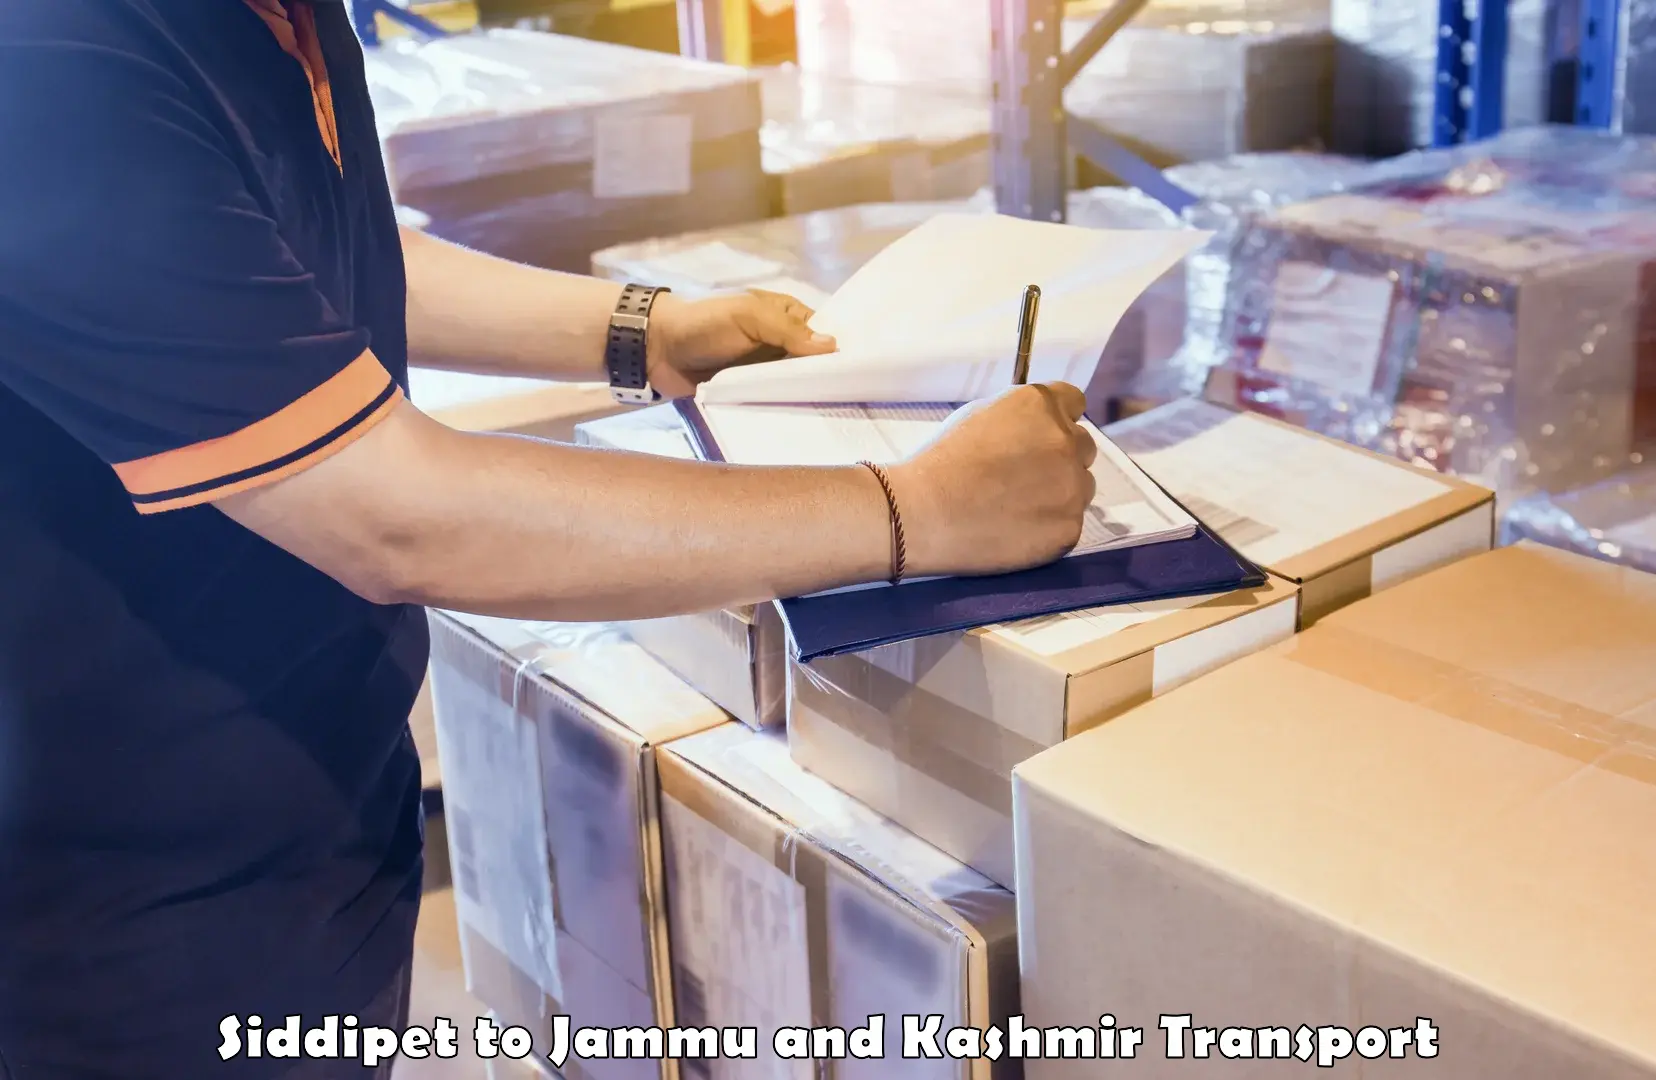 Shipping partner Siddipet to Kishtwar